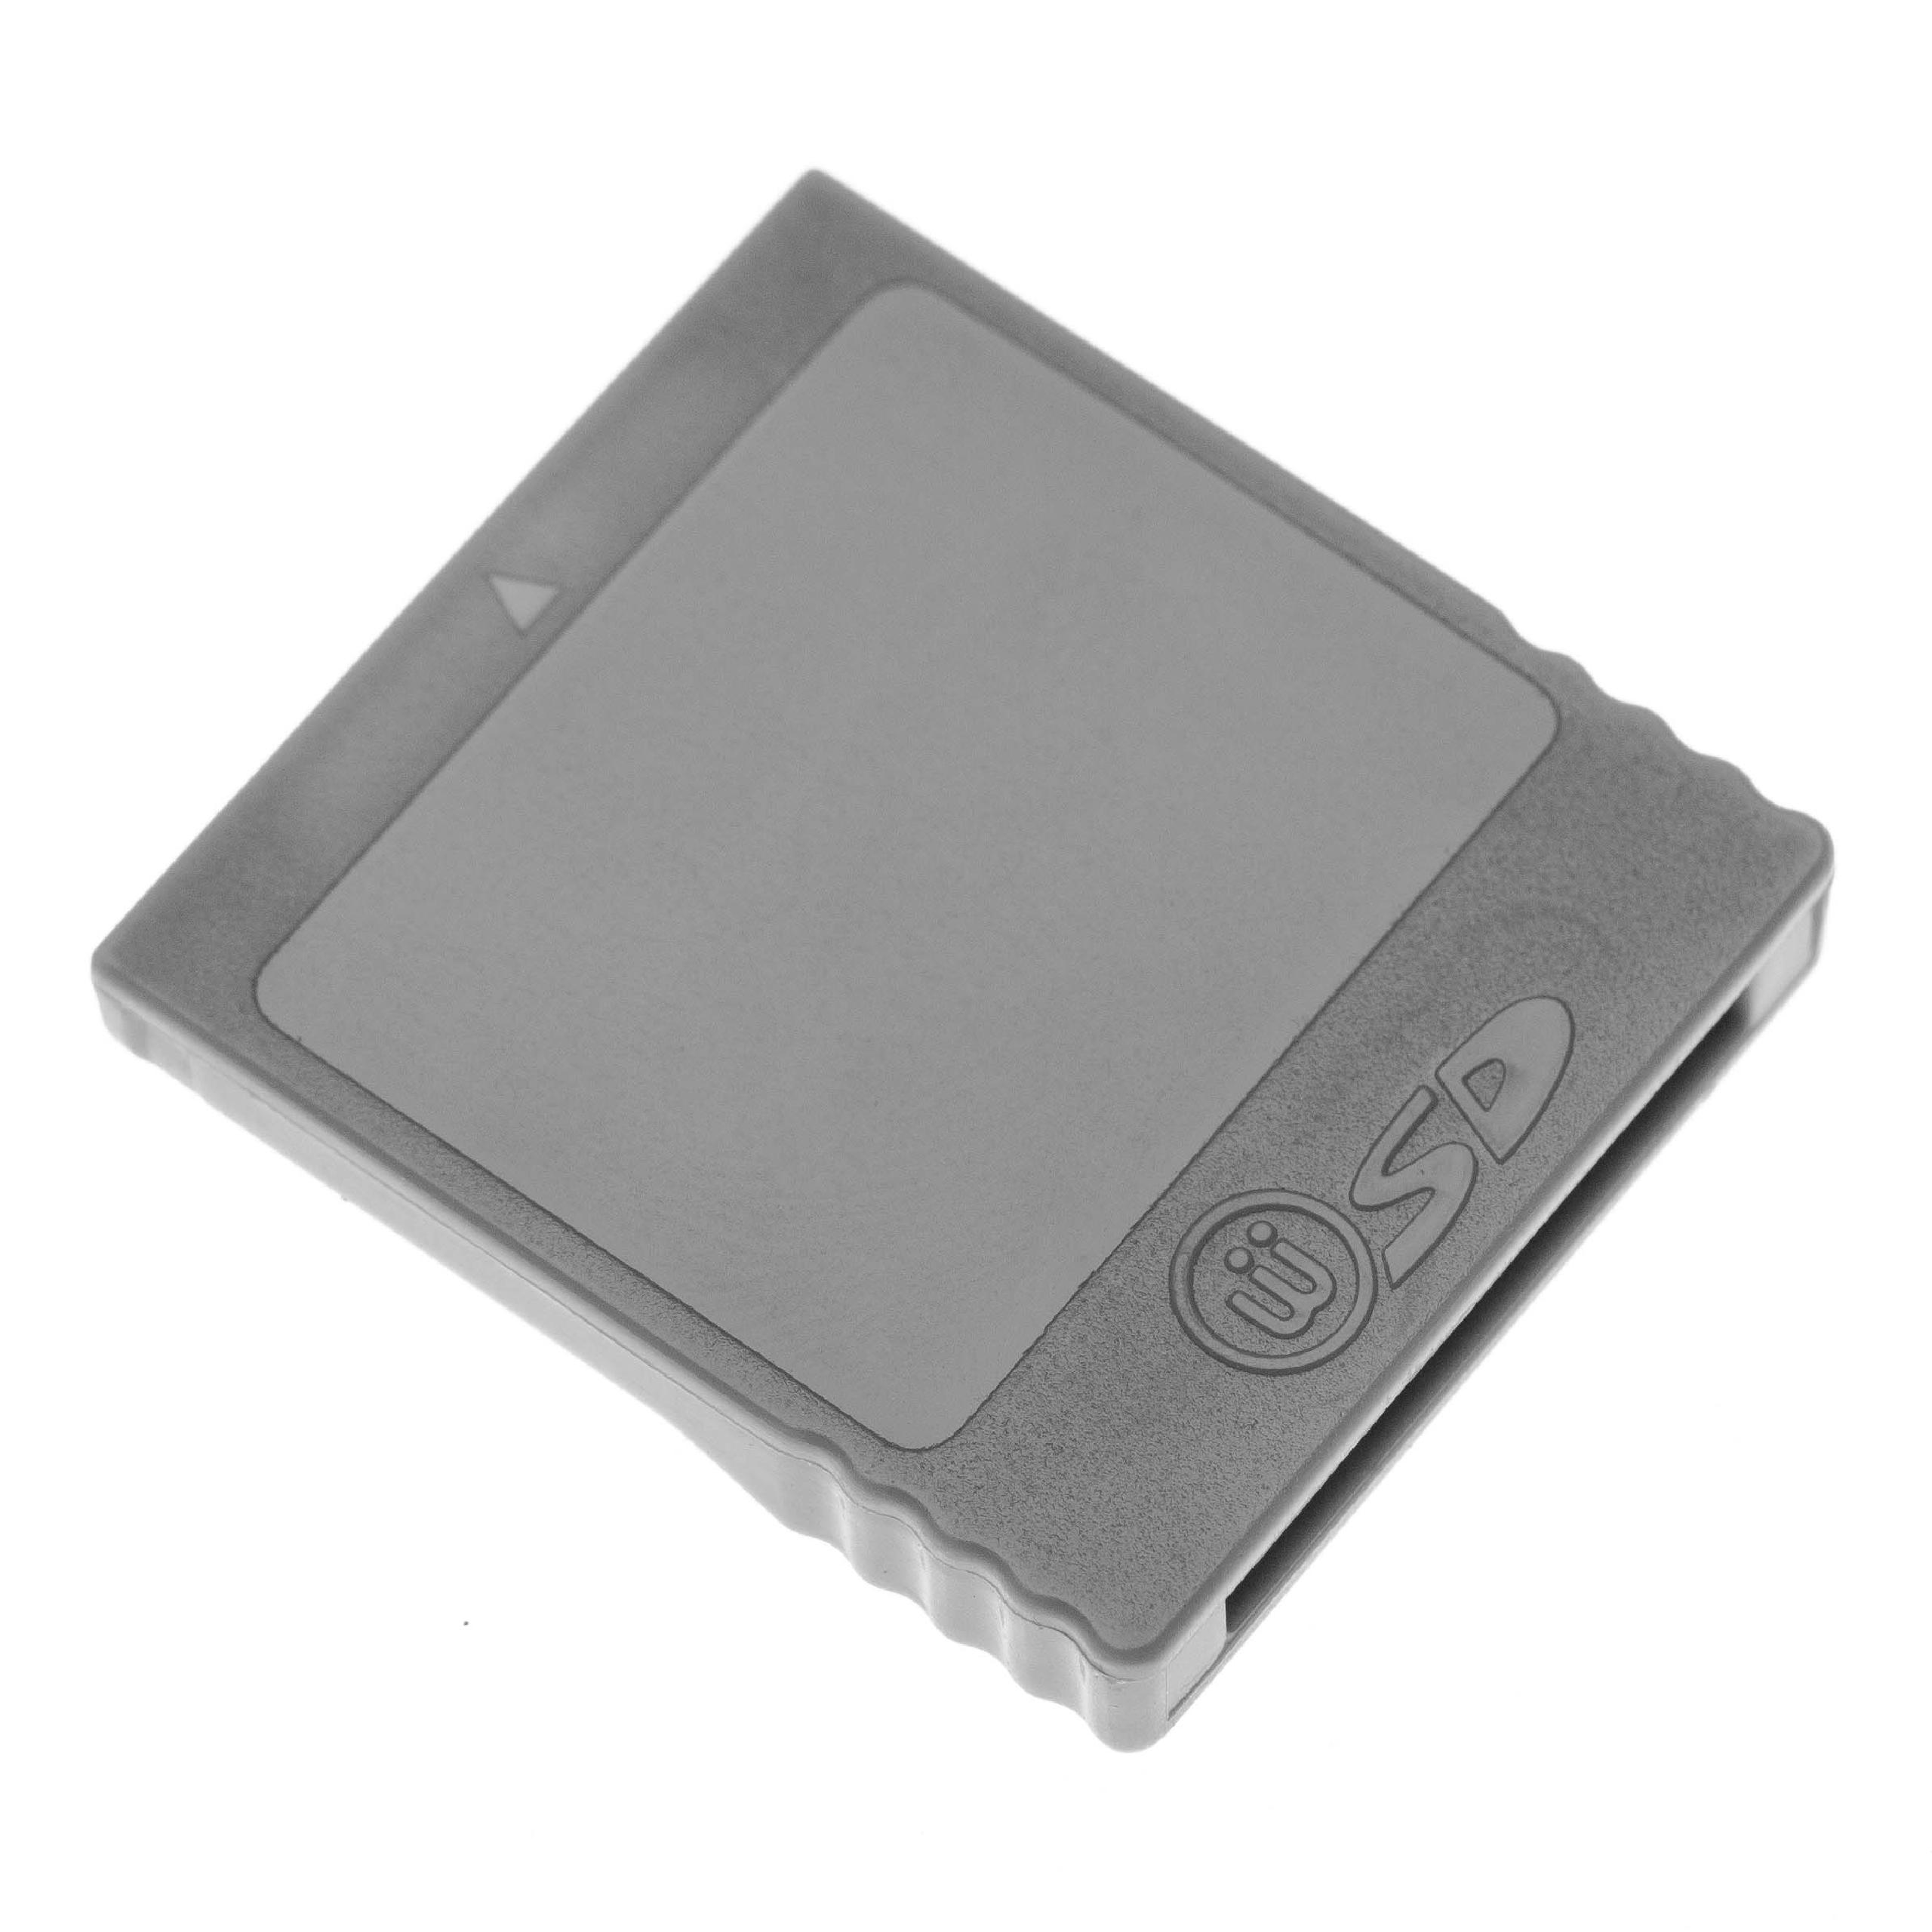 SD Kartenadapter passend für Nintendo GameCube, Wii Spielekonsole - SD Speicherkarten Konverter